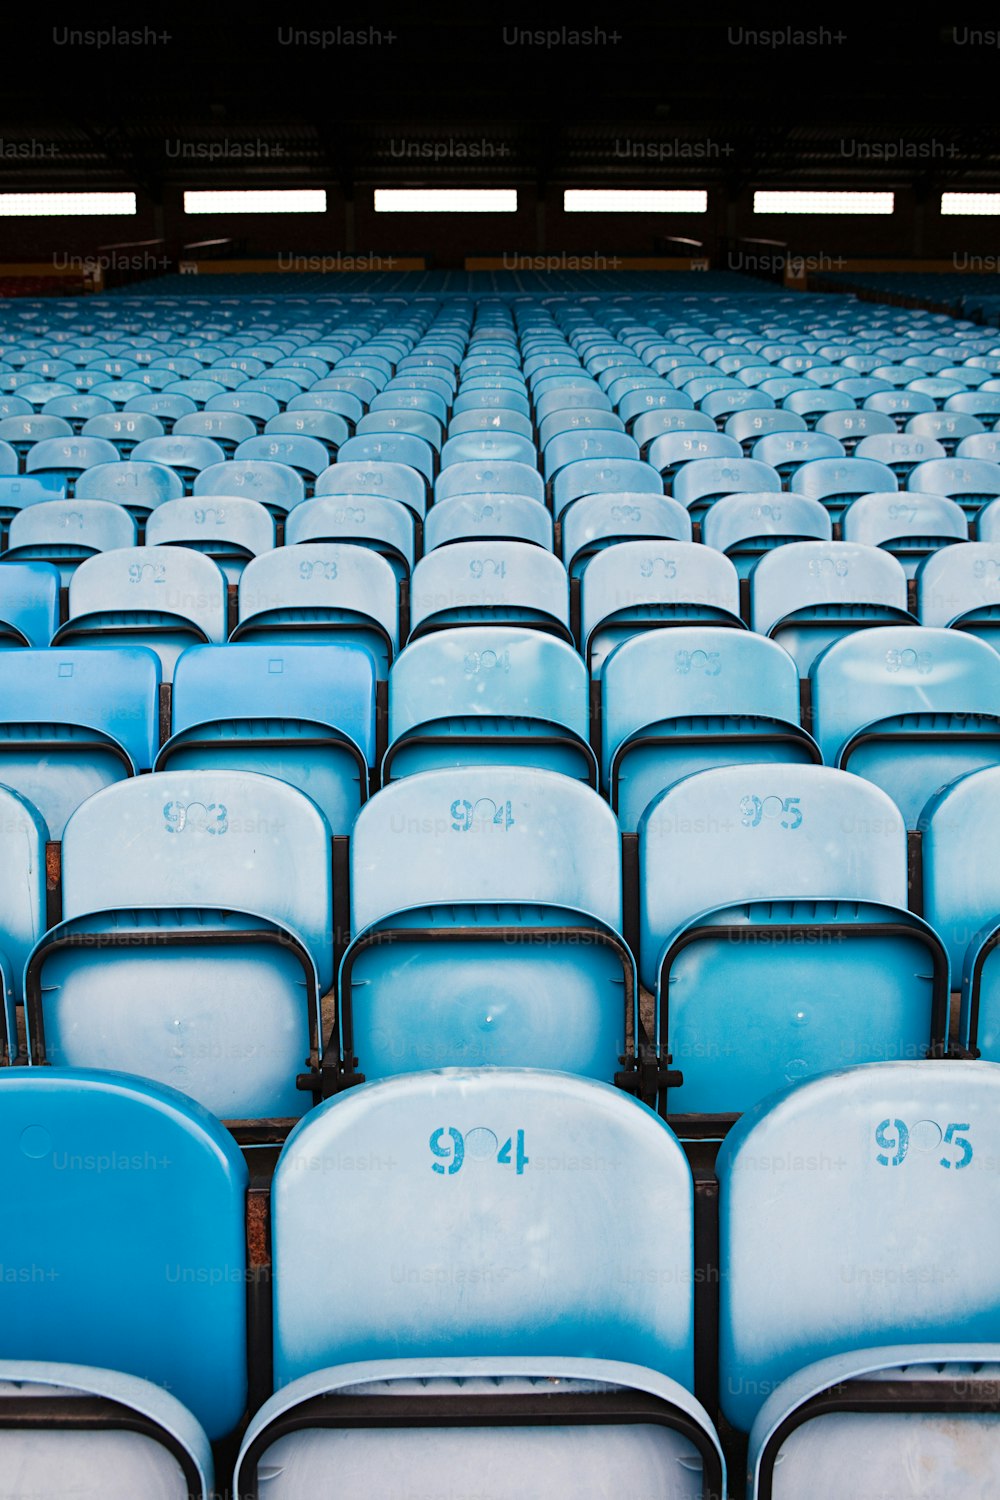 スタジアムの青と白の座席の列